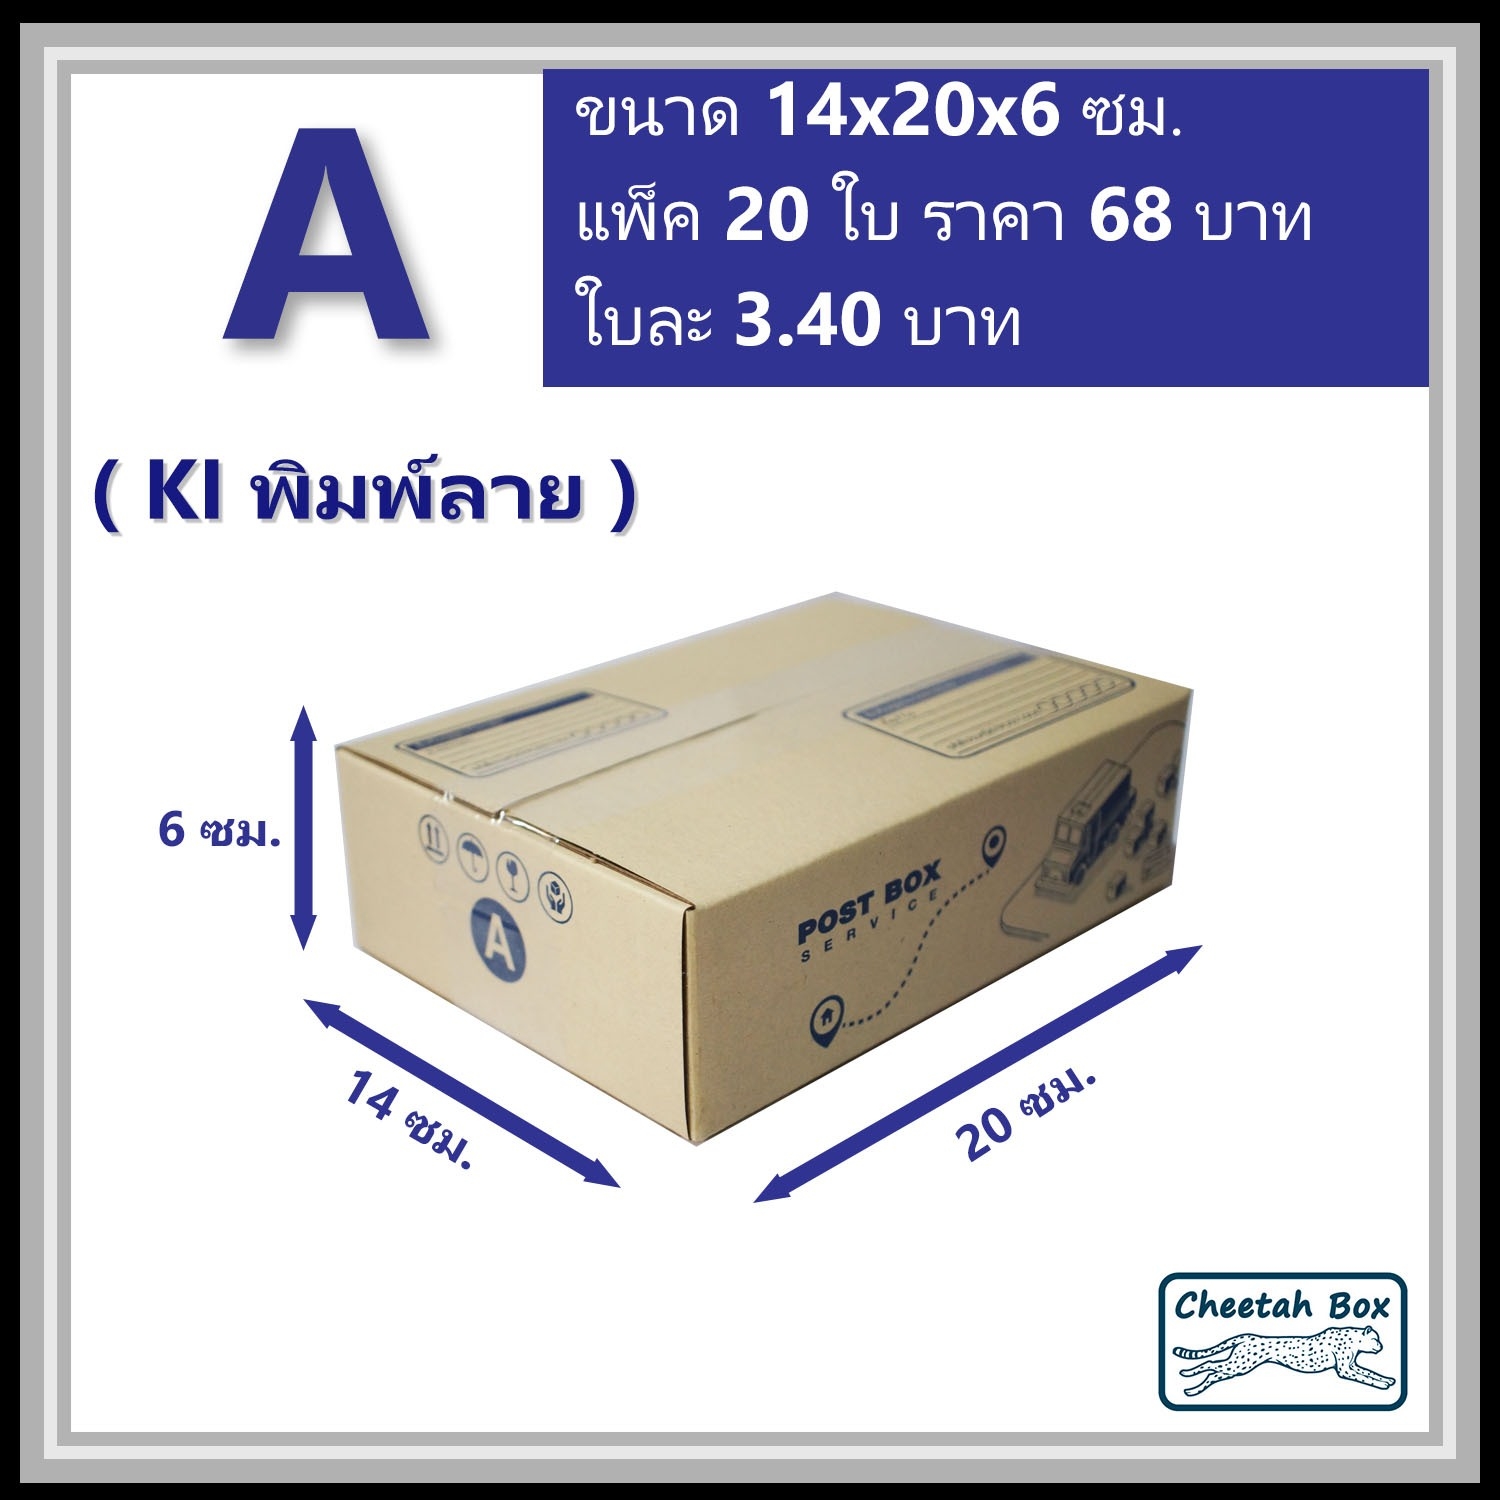 กล่องไปรษณีย์ A (Mini) พิมพ์ 1 สี (Cheetah Box) ขนาด 14*20*6 cm.